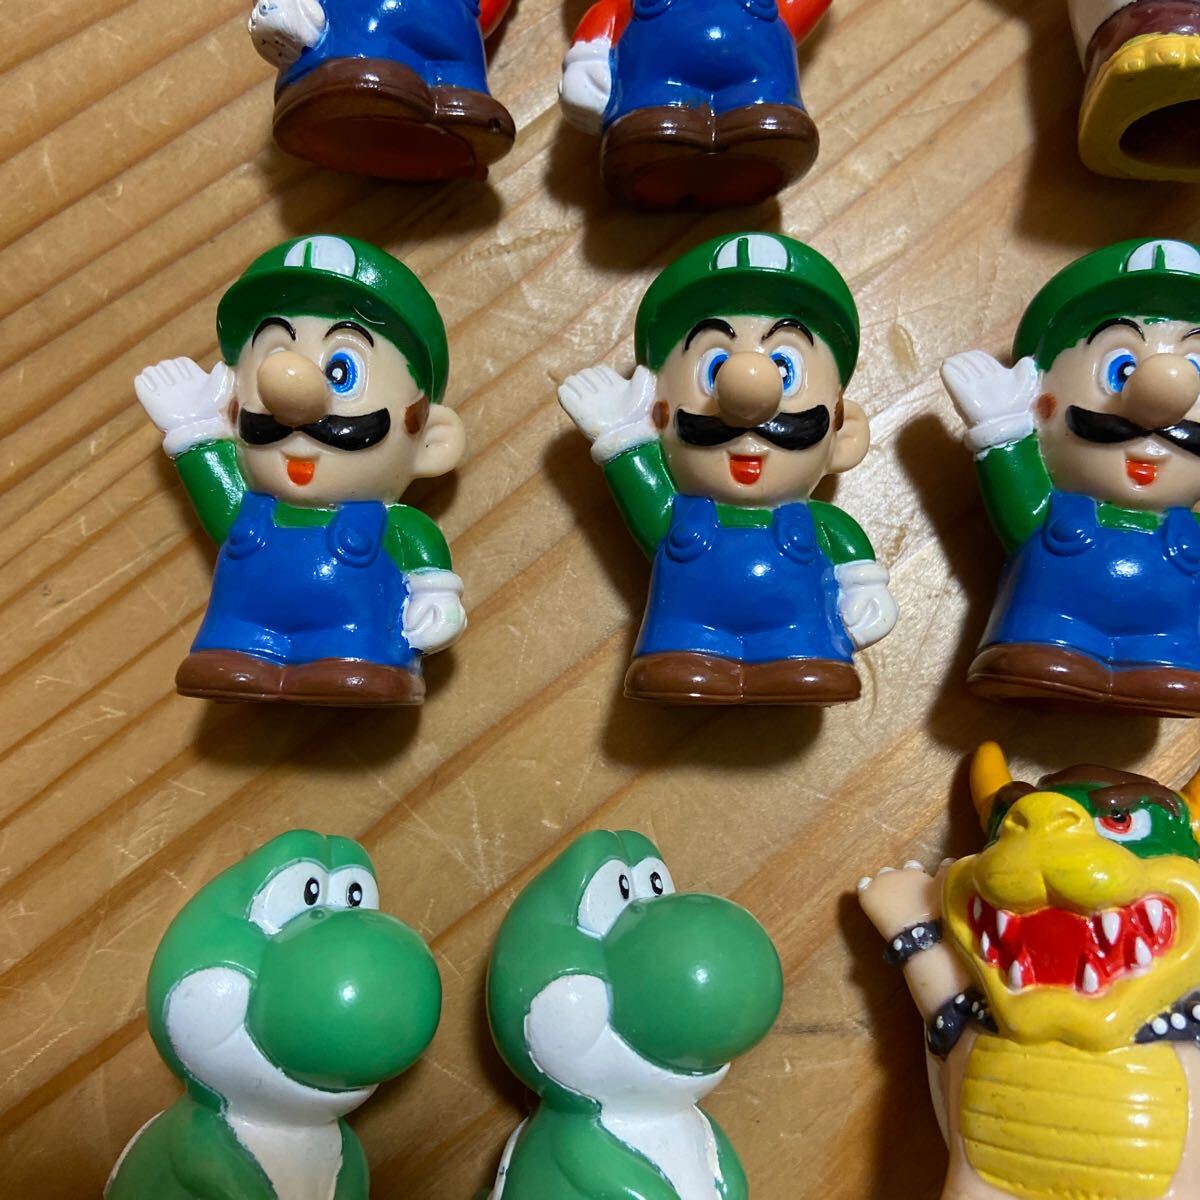  палец кукла sofvi super Mario Louis - ось payosi- и т.п. 22 шт nintendo Mario Brothers 